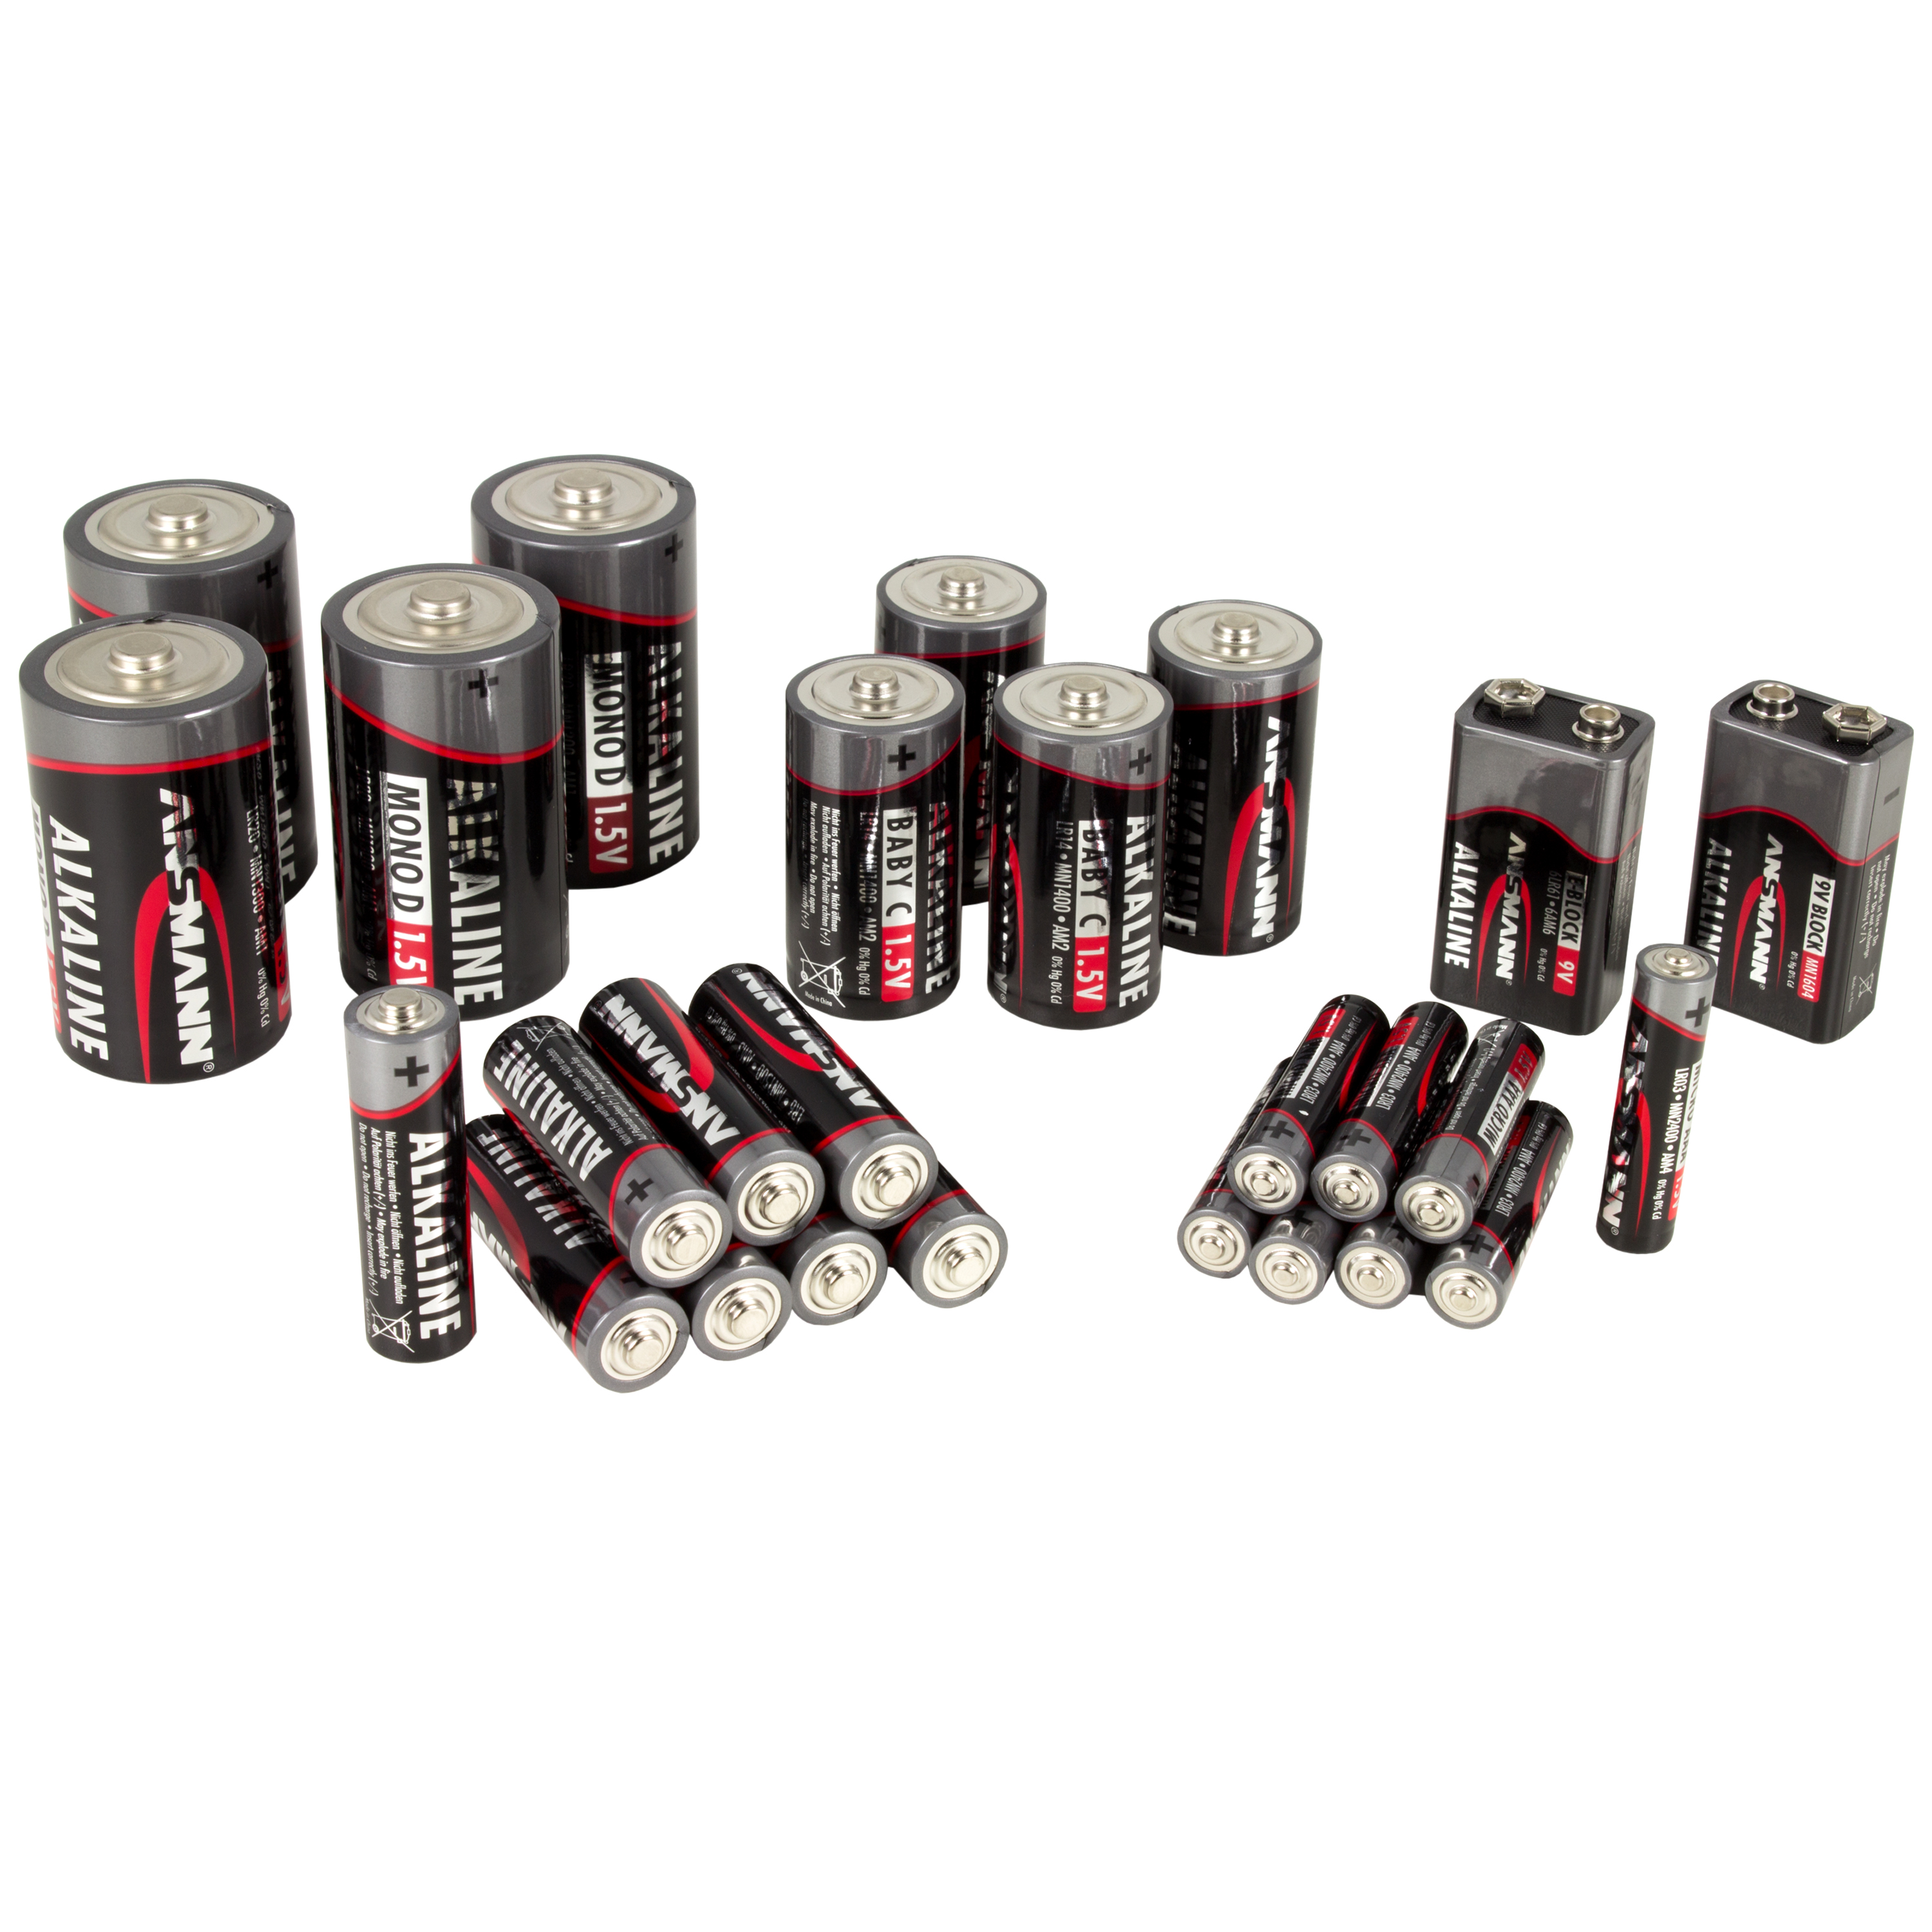 Ansmann RED Alkaline-Batterie 'Baby' 4er-Pack